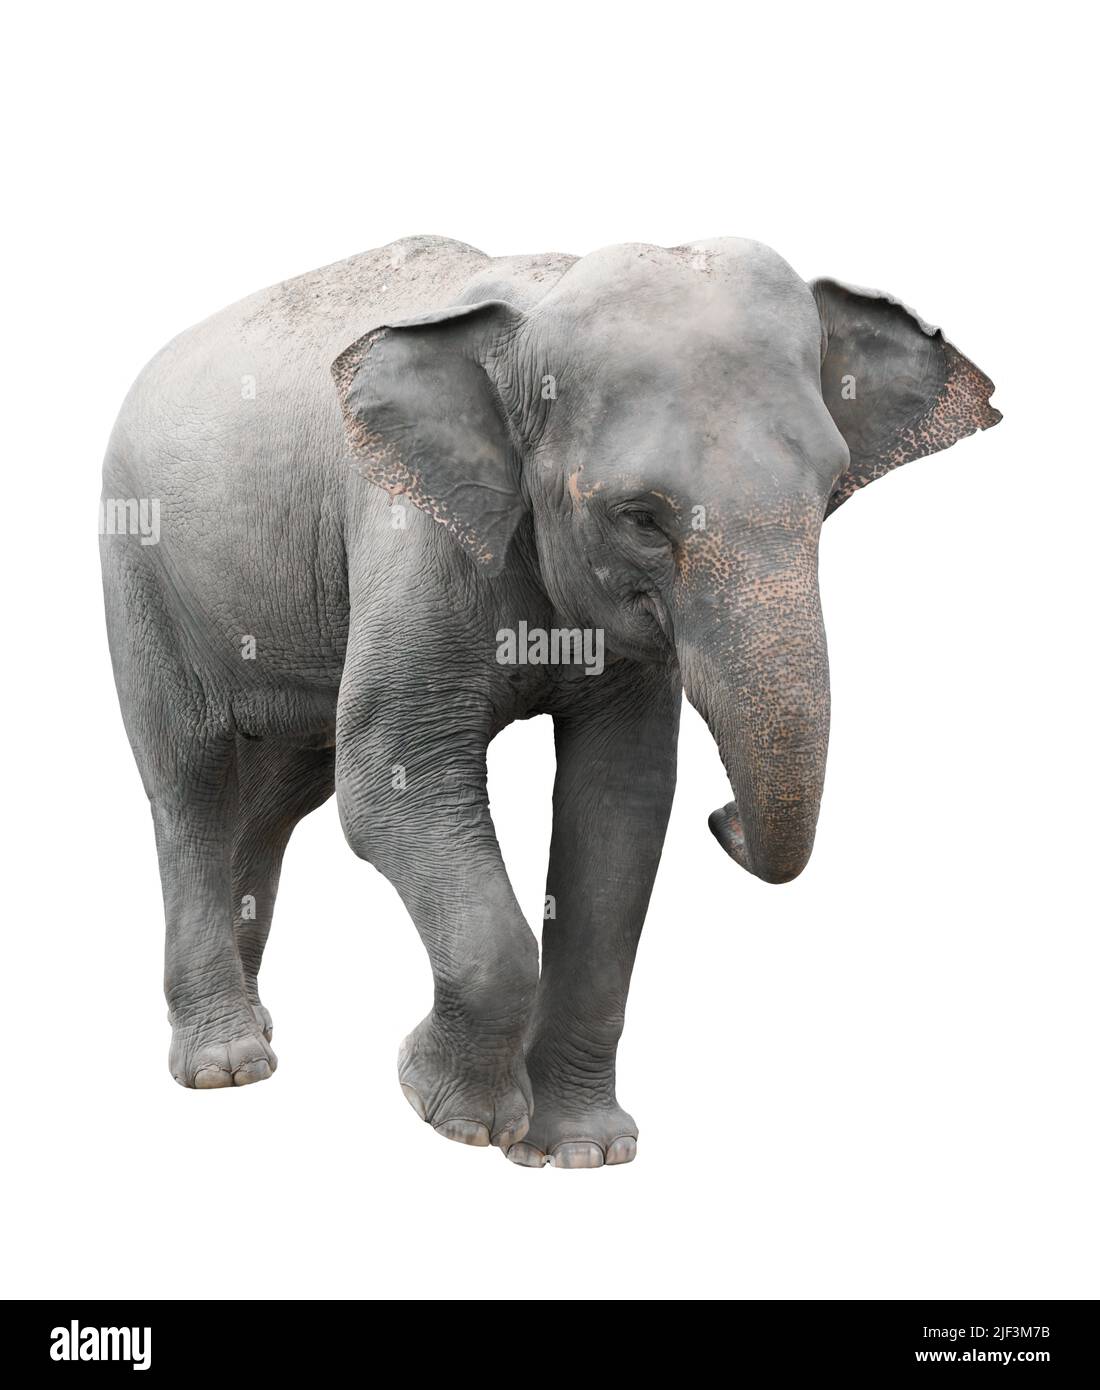 asia elephant isolated on white background Stock Photo